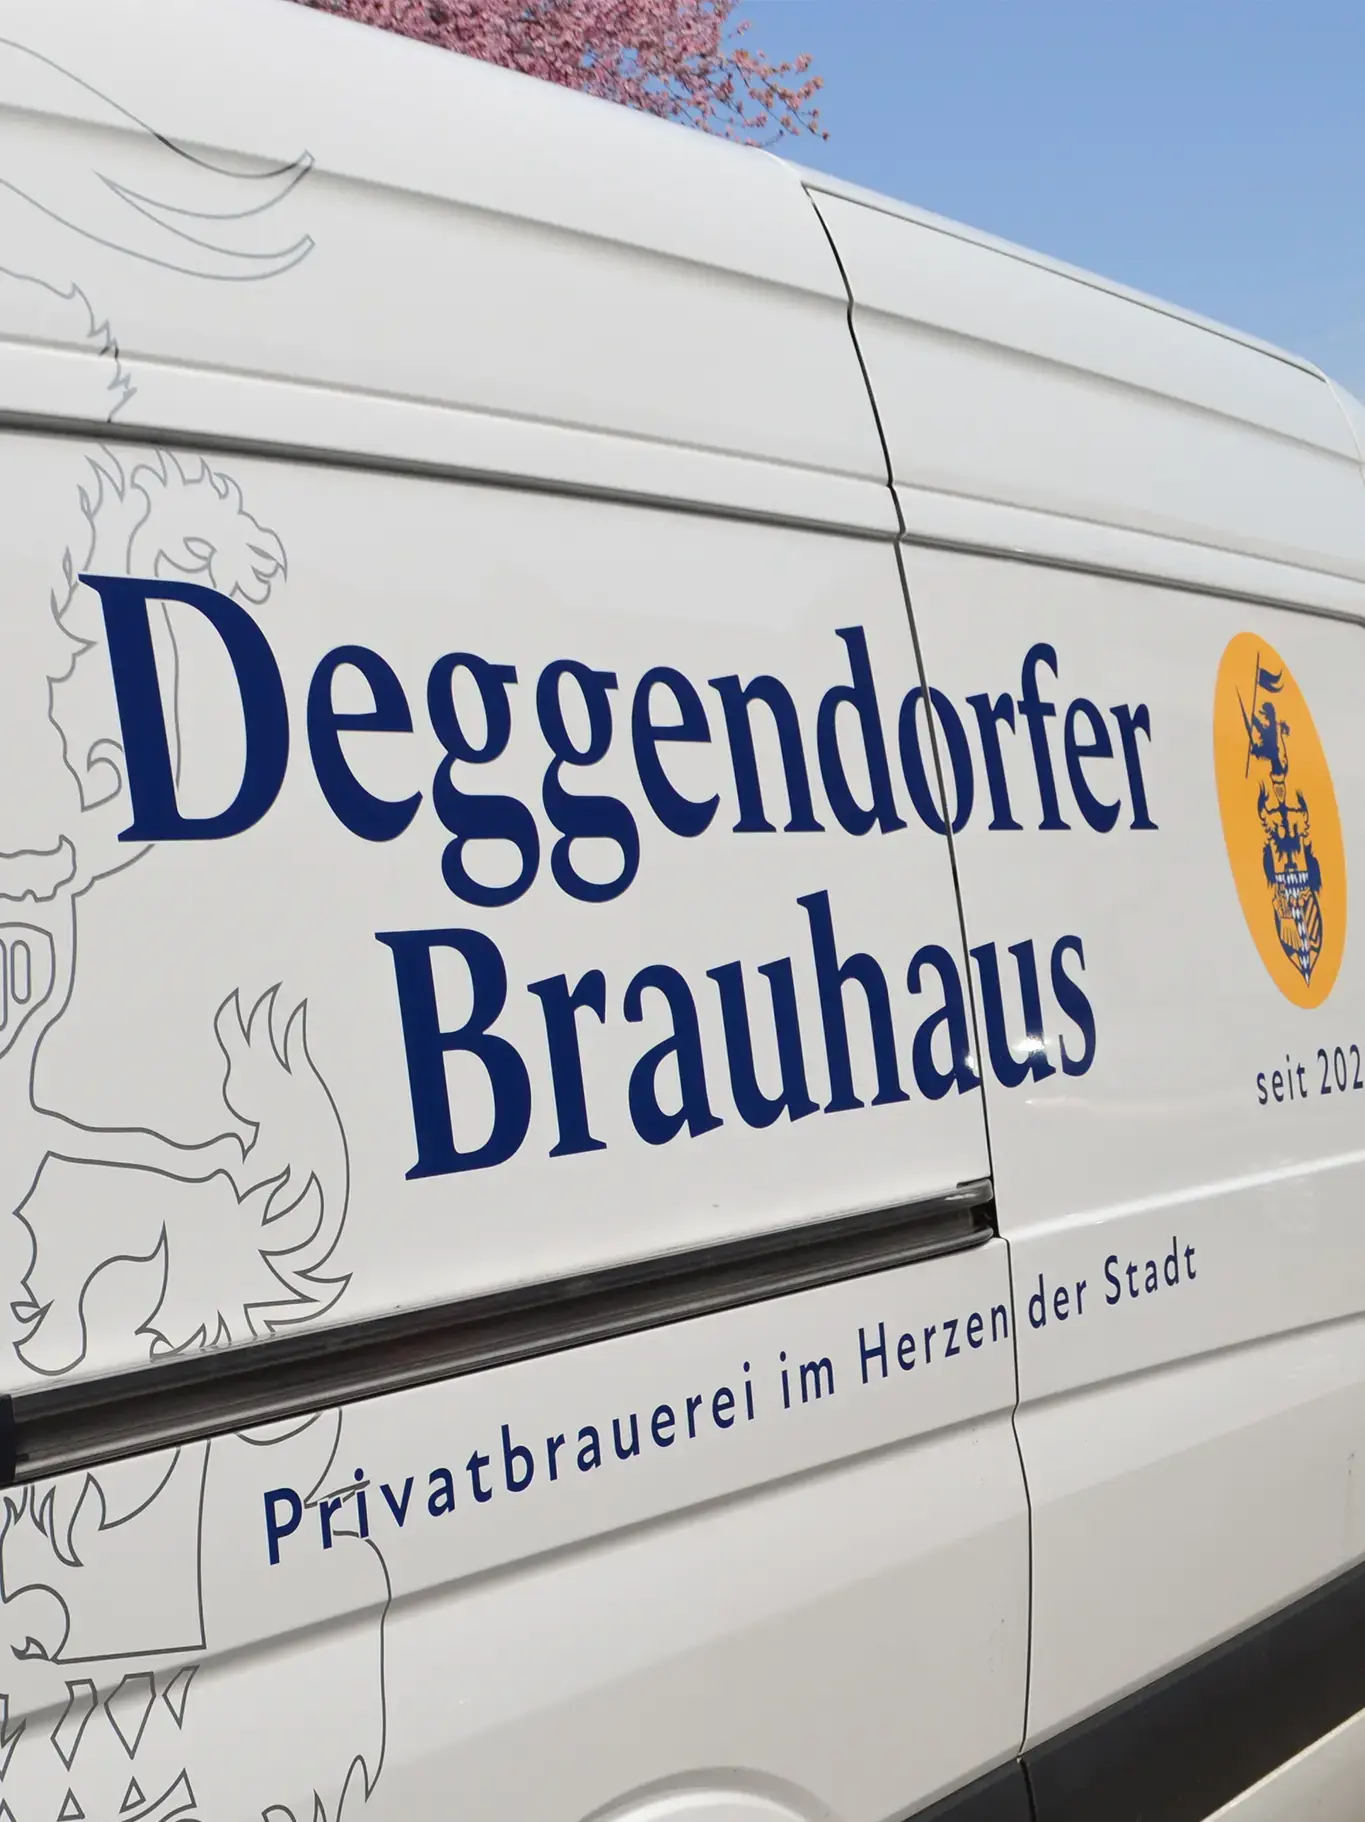 brauhaus-deggendorf-inhaltsbilder-3